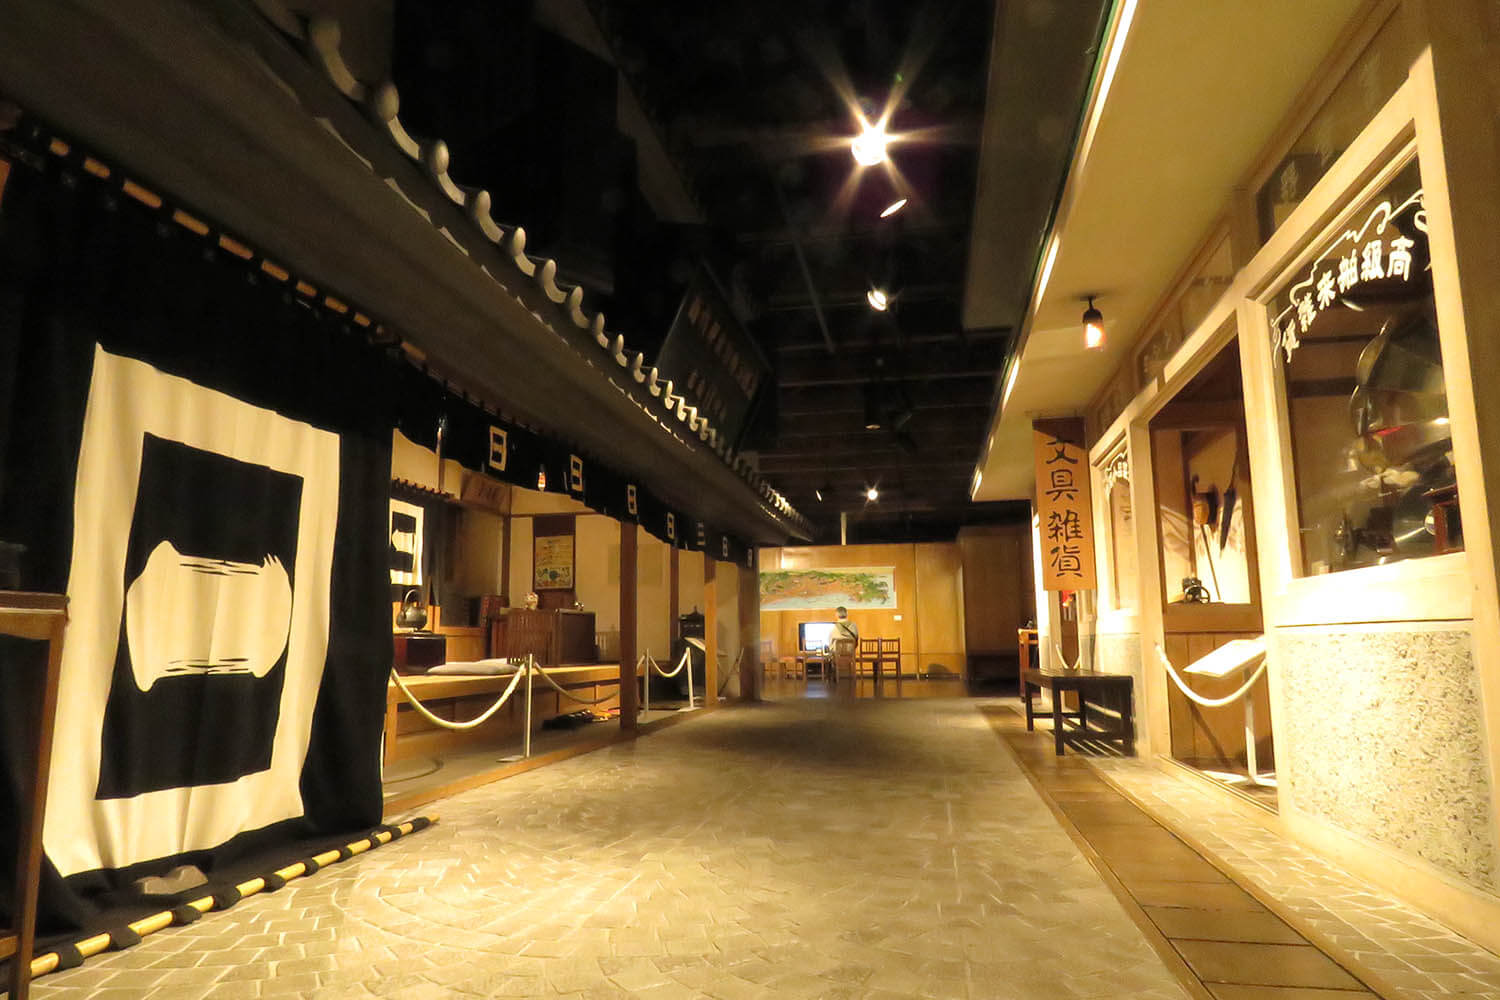 明治末期から昭和初期の、商家が立ち並ぶ小樽の街並みが再現されている